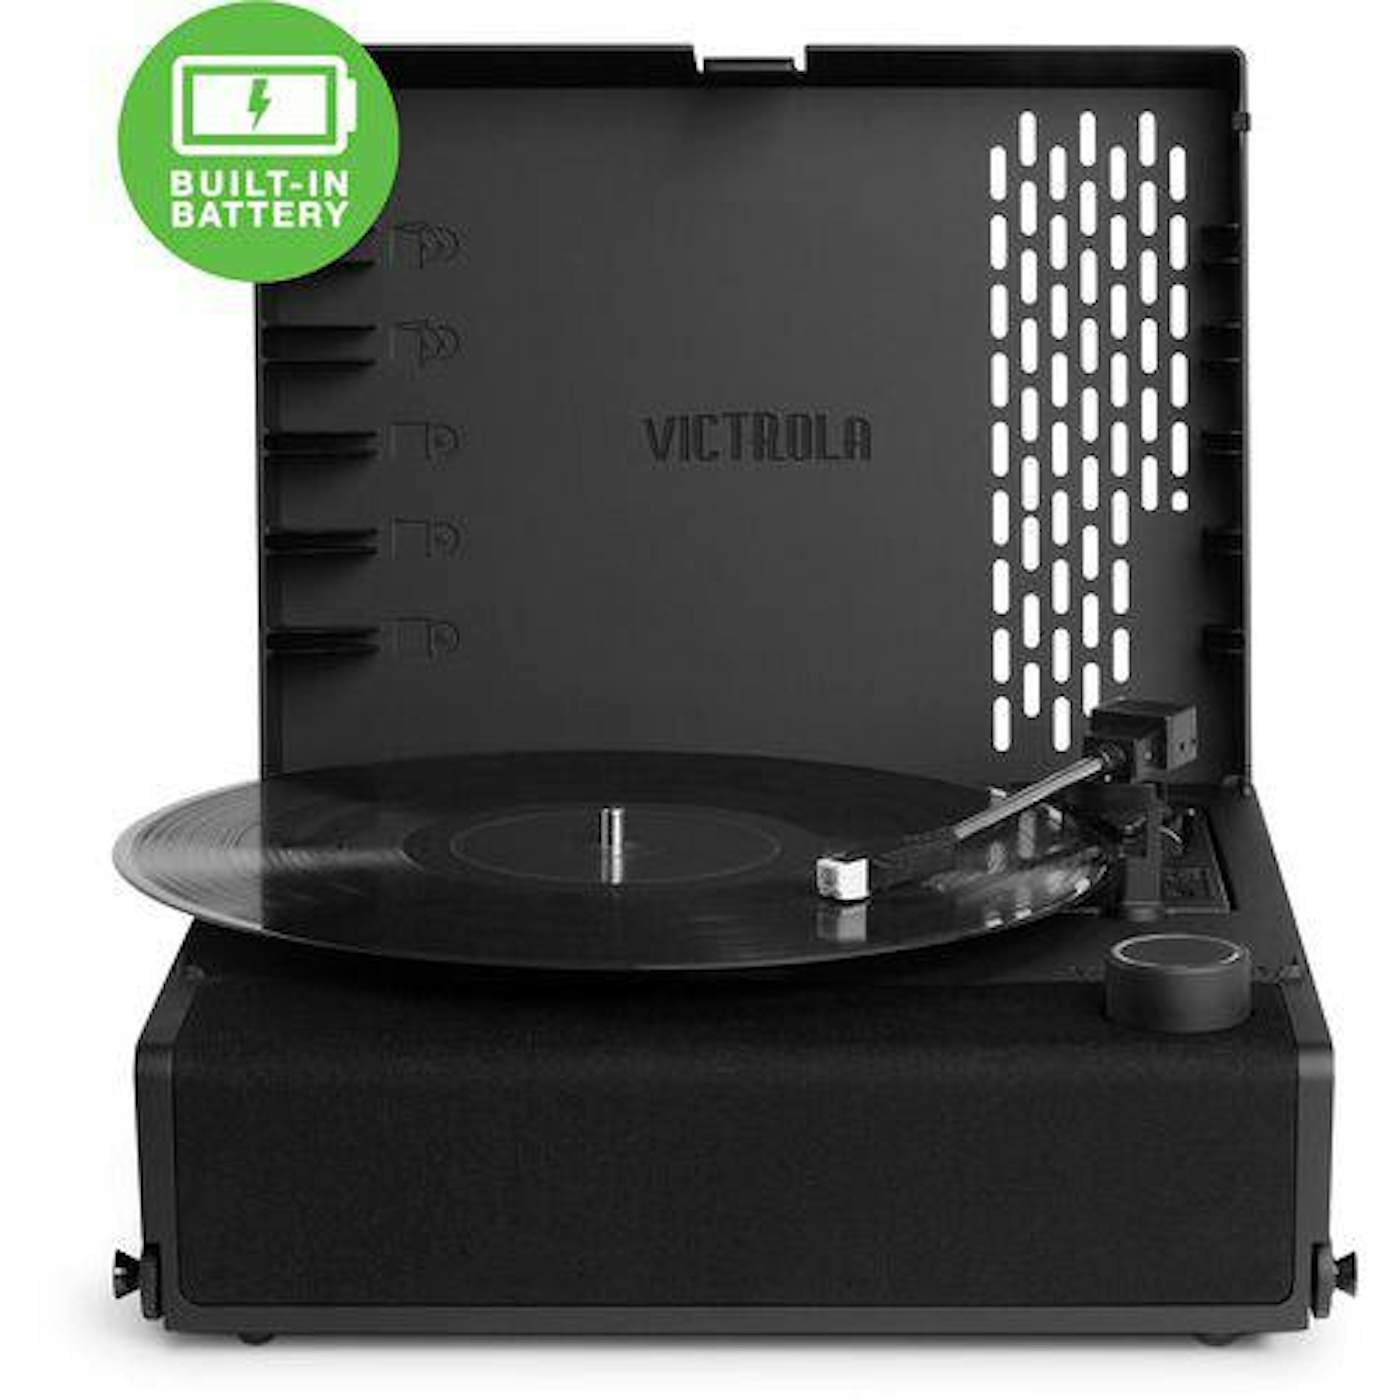 The Turntables VICTROLA VSC750SBBLK REVGO BT RECORD PLAYER 3SP BK